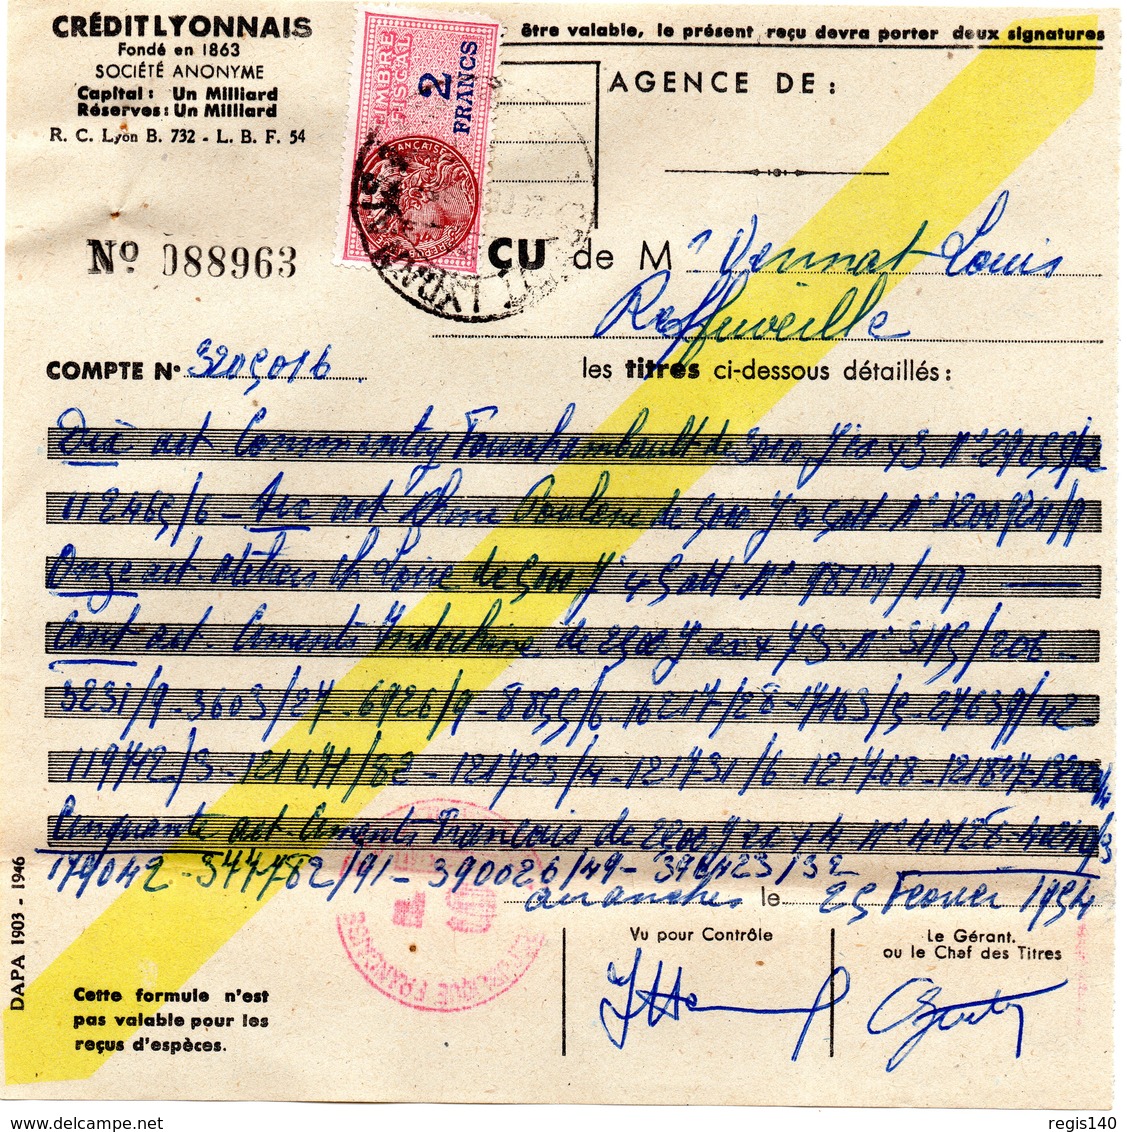 Ensemble de 6 documents  de 1954 " Reçu Crédit Lyonnais" avec chacun un timbre fiscal  (deux à 7 F, 4 à 2 F) + une liste